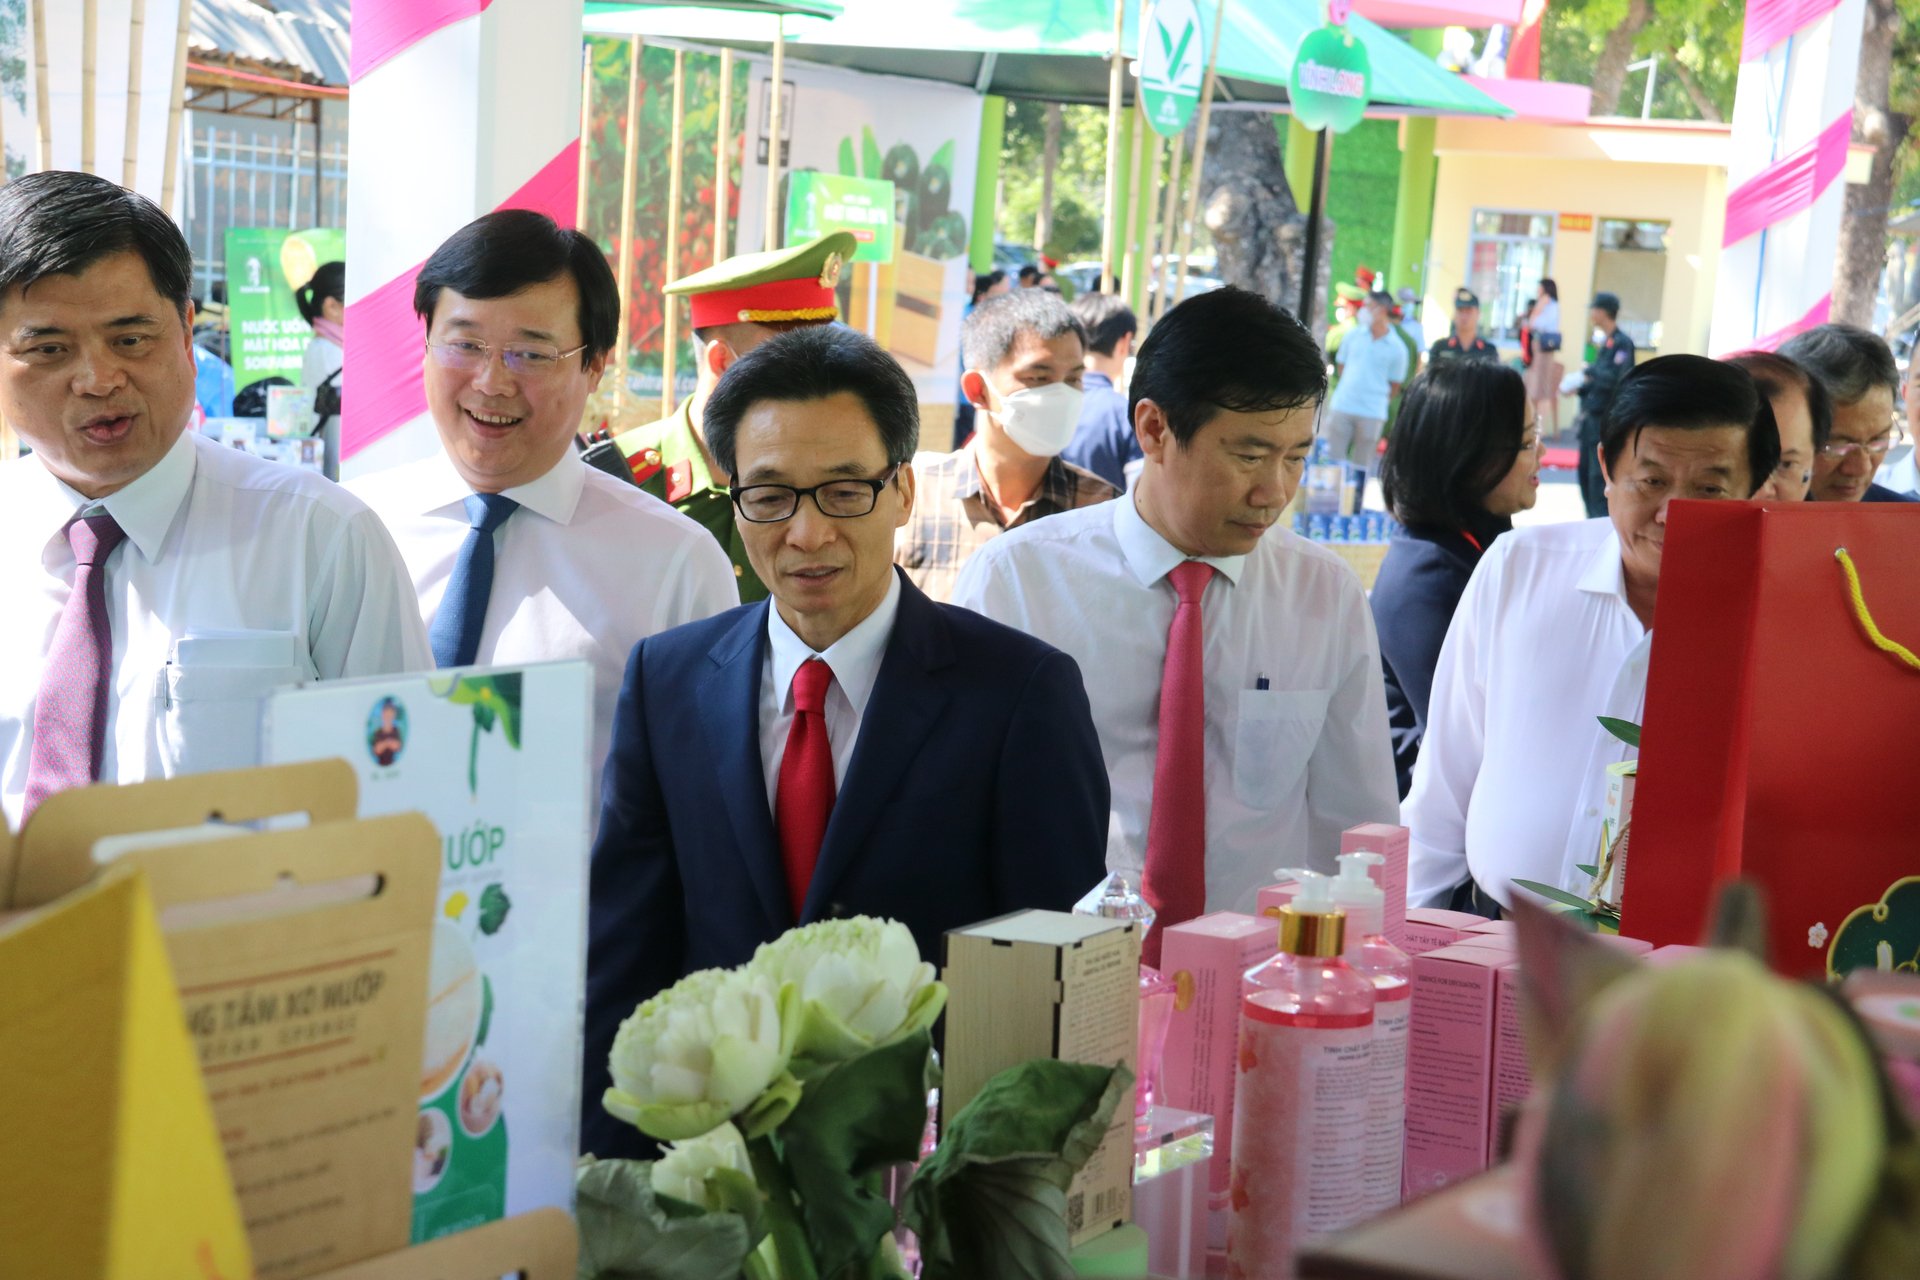 Phó Thủ tướng Vũ Đức Đam thăm các gian hàng với sản phẩm khởi nghiệp ở ĐBSCL 'trình làng' trong diễn đàn Mekong Starup lần I/2022